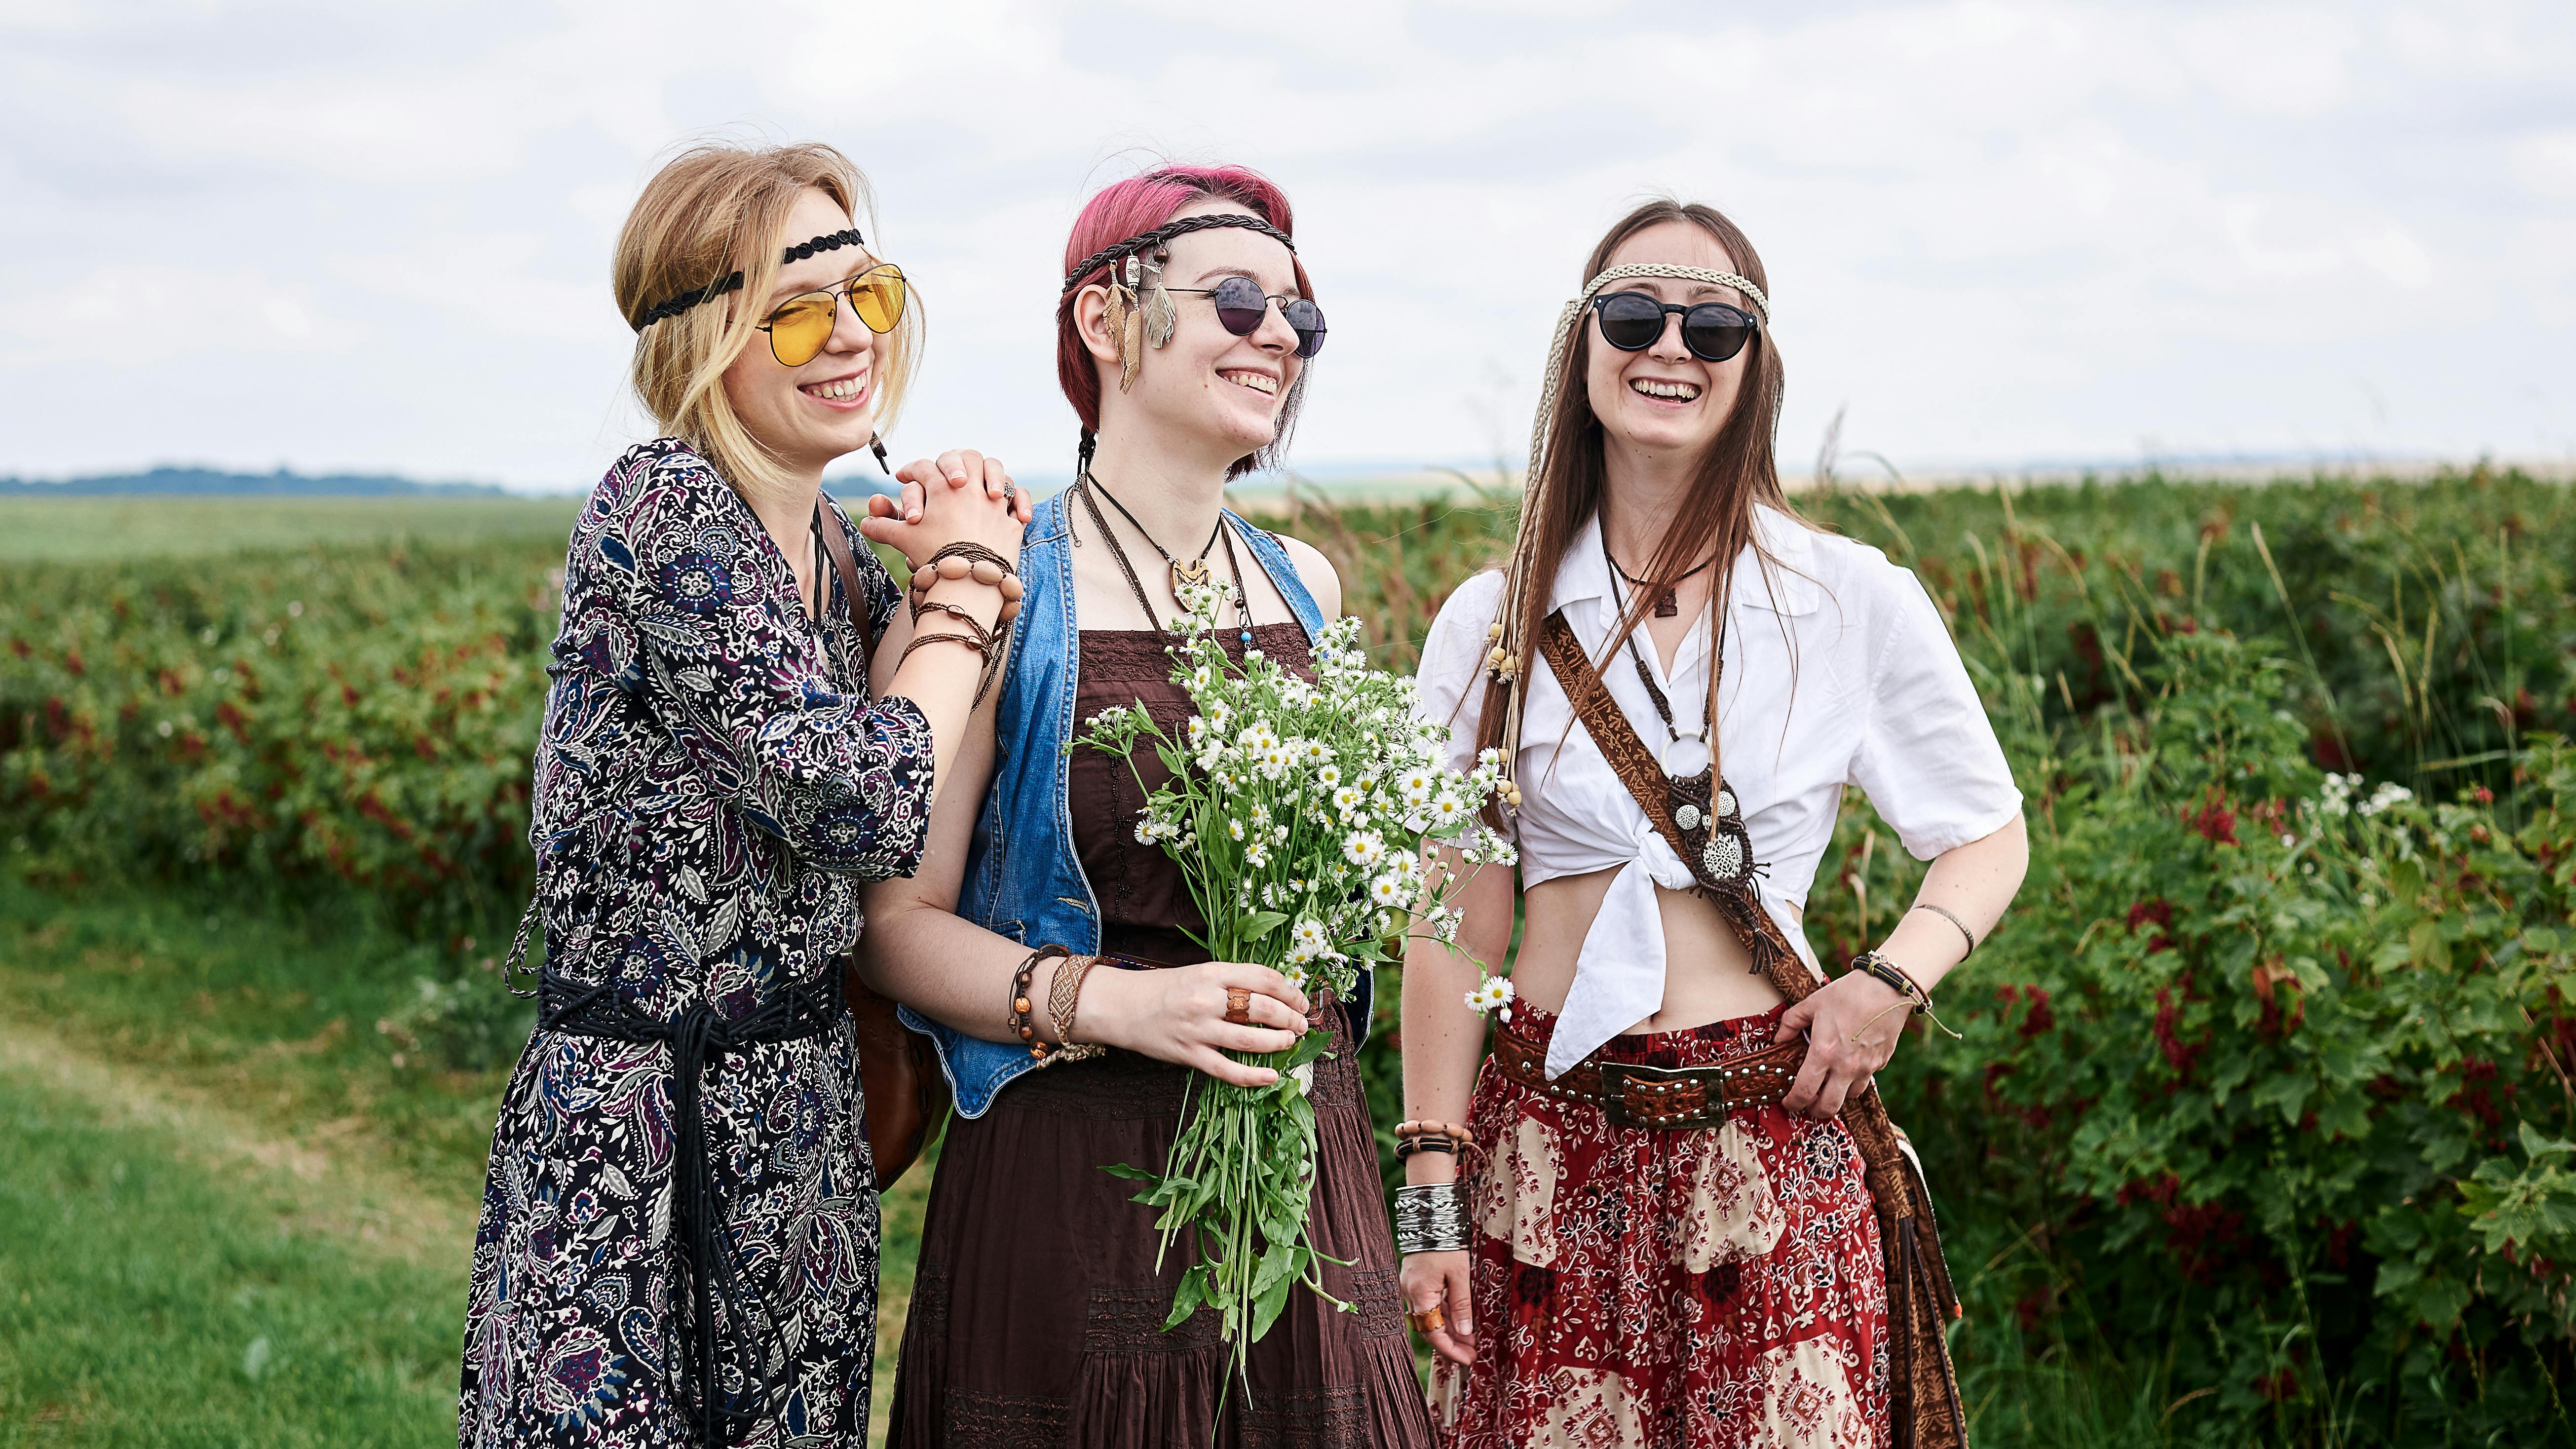 Drei junge Hippie-Frauen, die Kleidung im Boho-Stil tragen, stehen auf einem grünen Johannisbeerfeld und halten einen sommerlichen Kamillenstrauß in der Hand. 